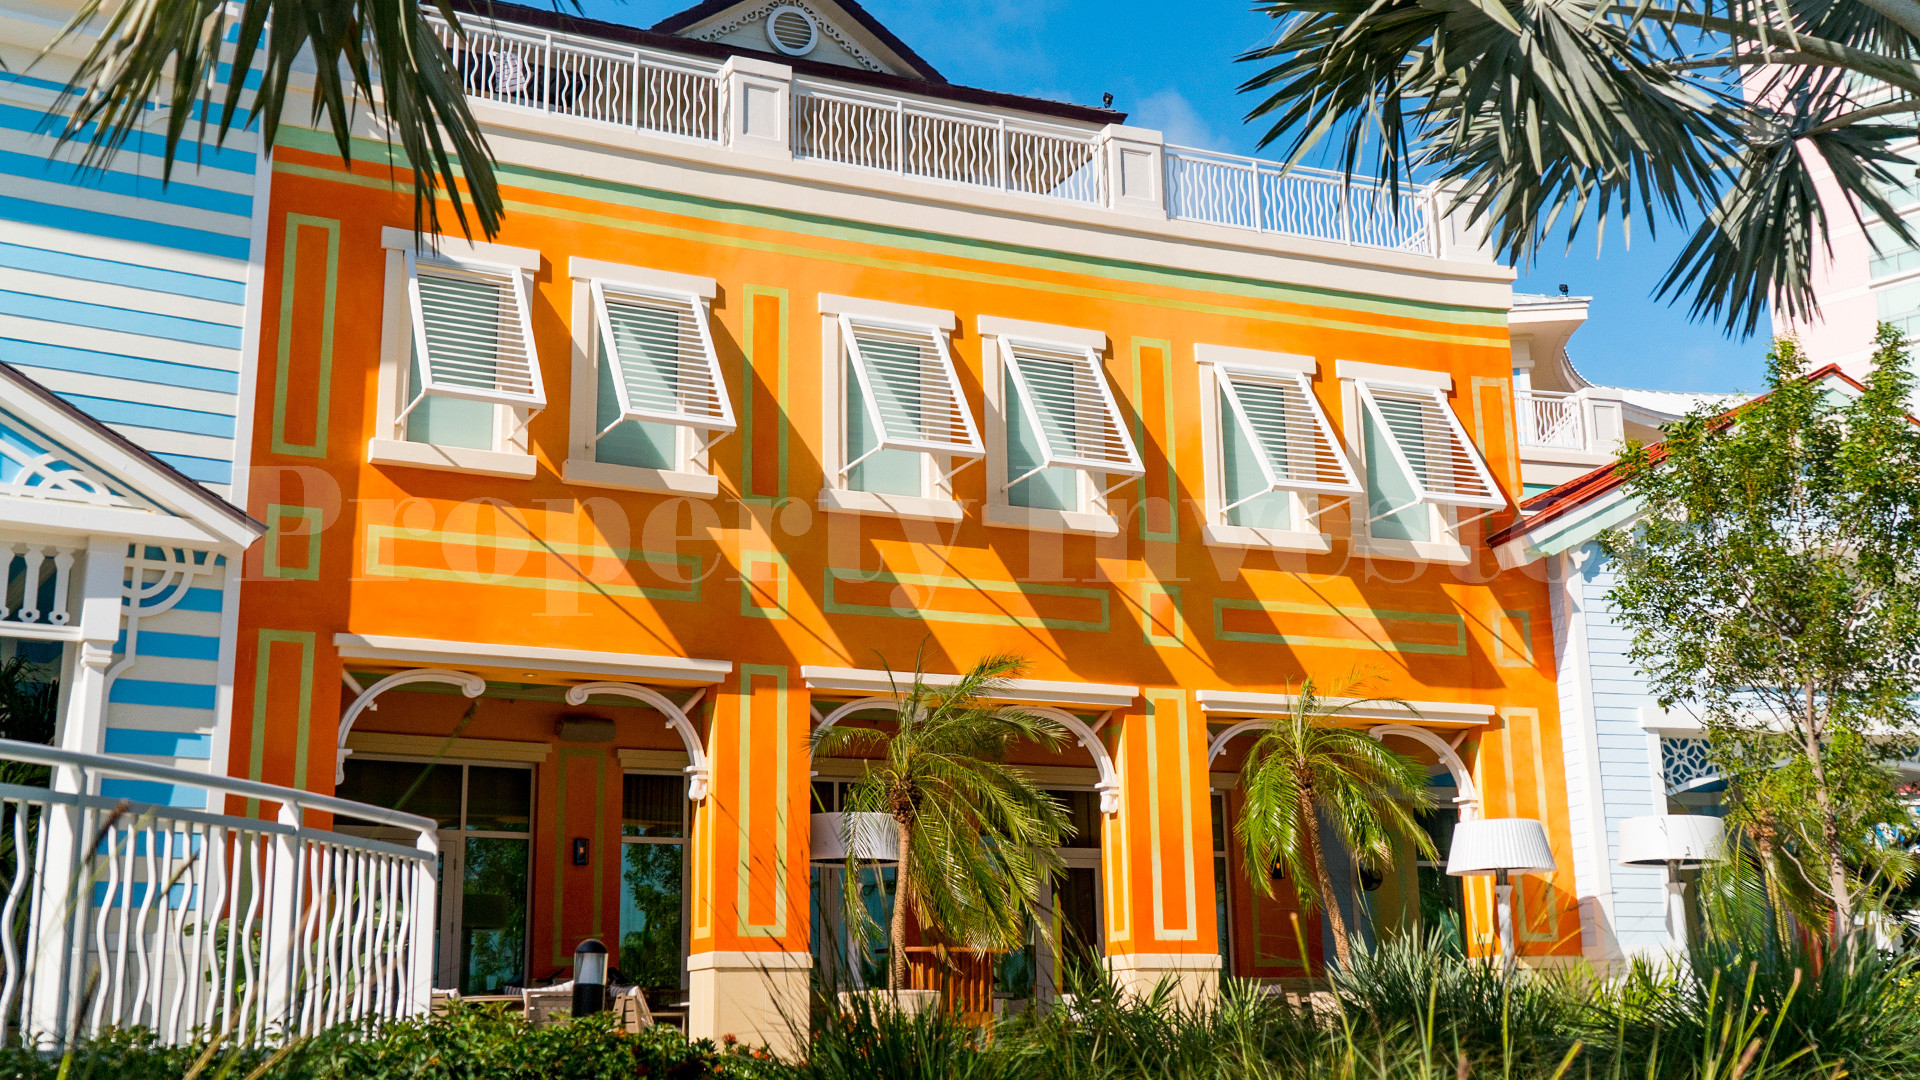 2 Bedroom Condo-Hotel Suite in the Bahamas (Suite 202)